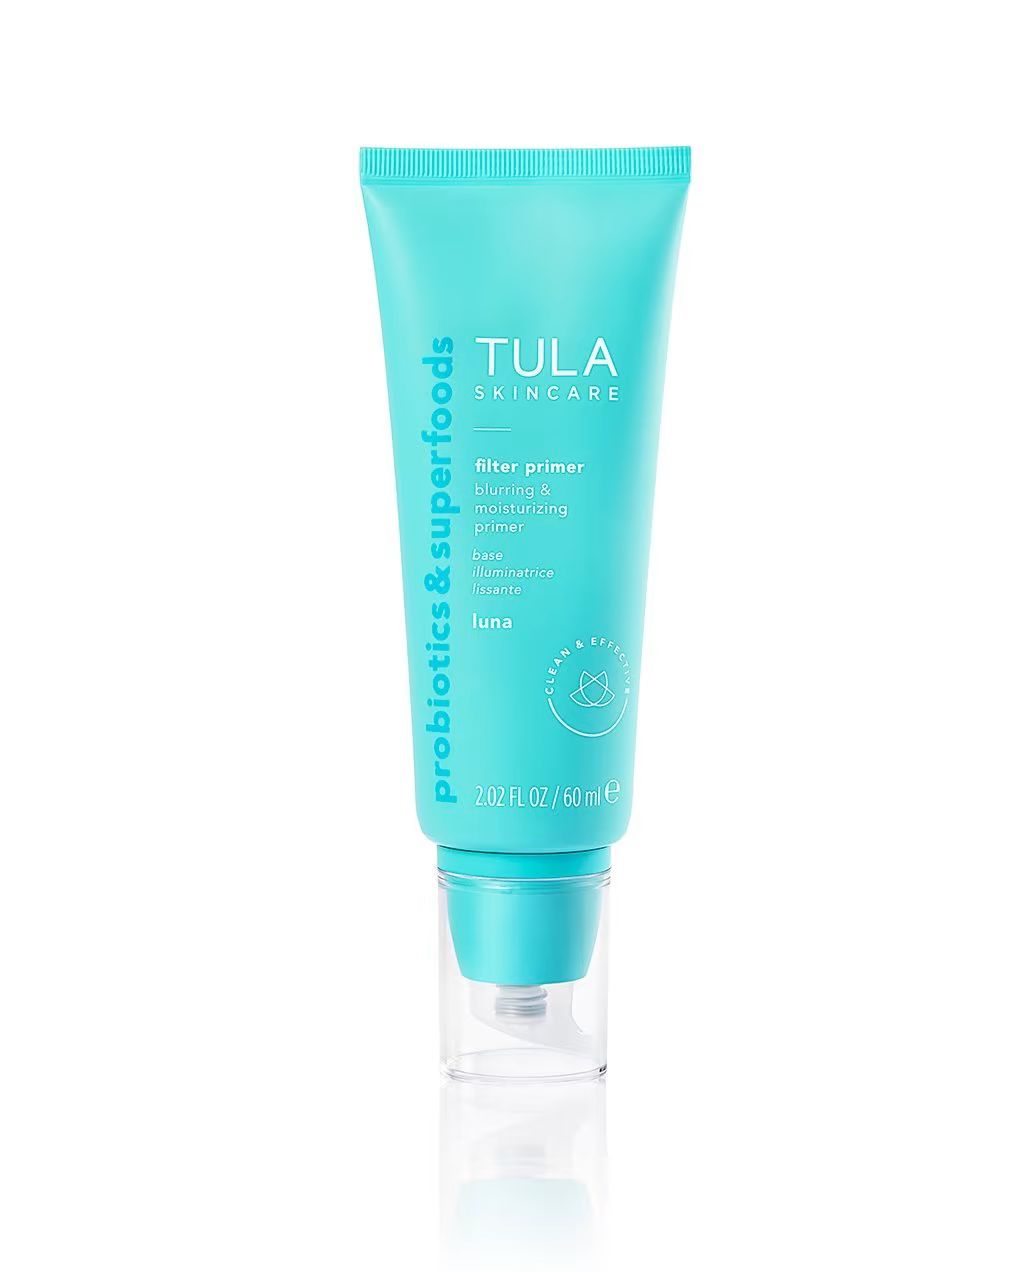 blurring & moisturizing primer supersize (sheerly tinted) | Tula Skincare